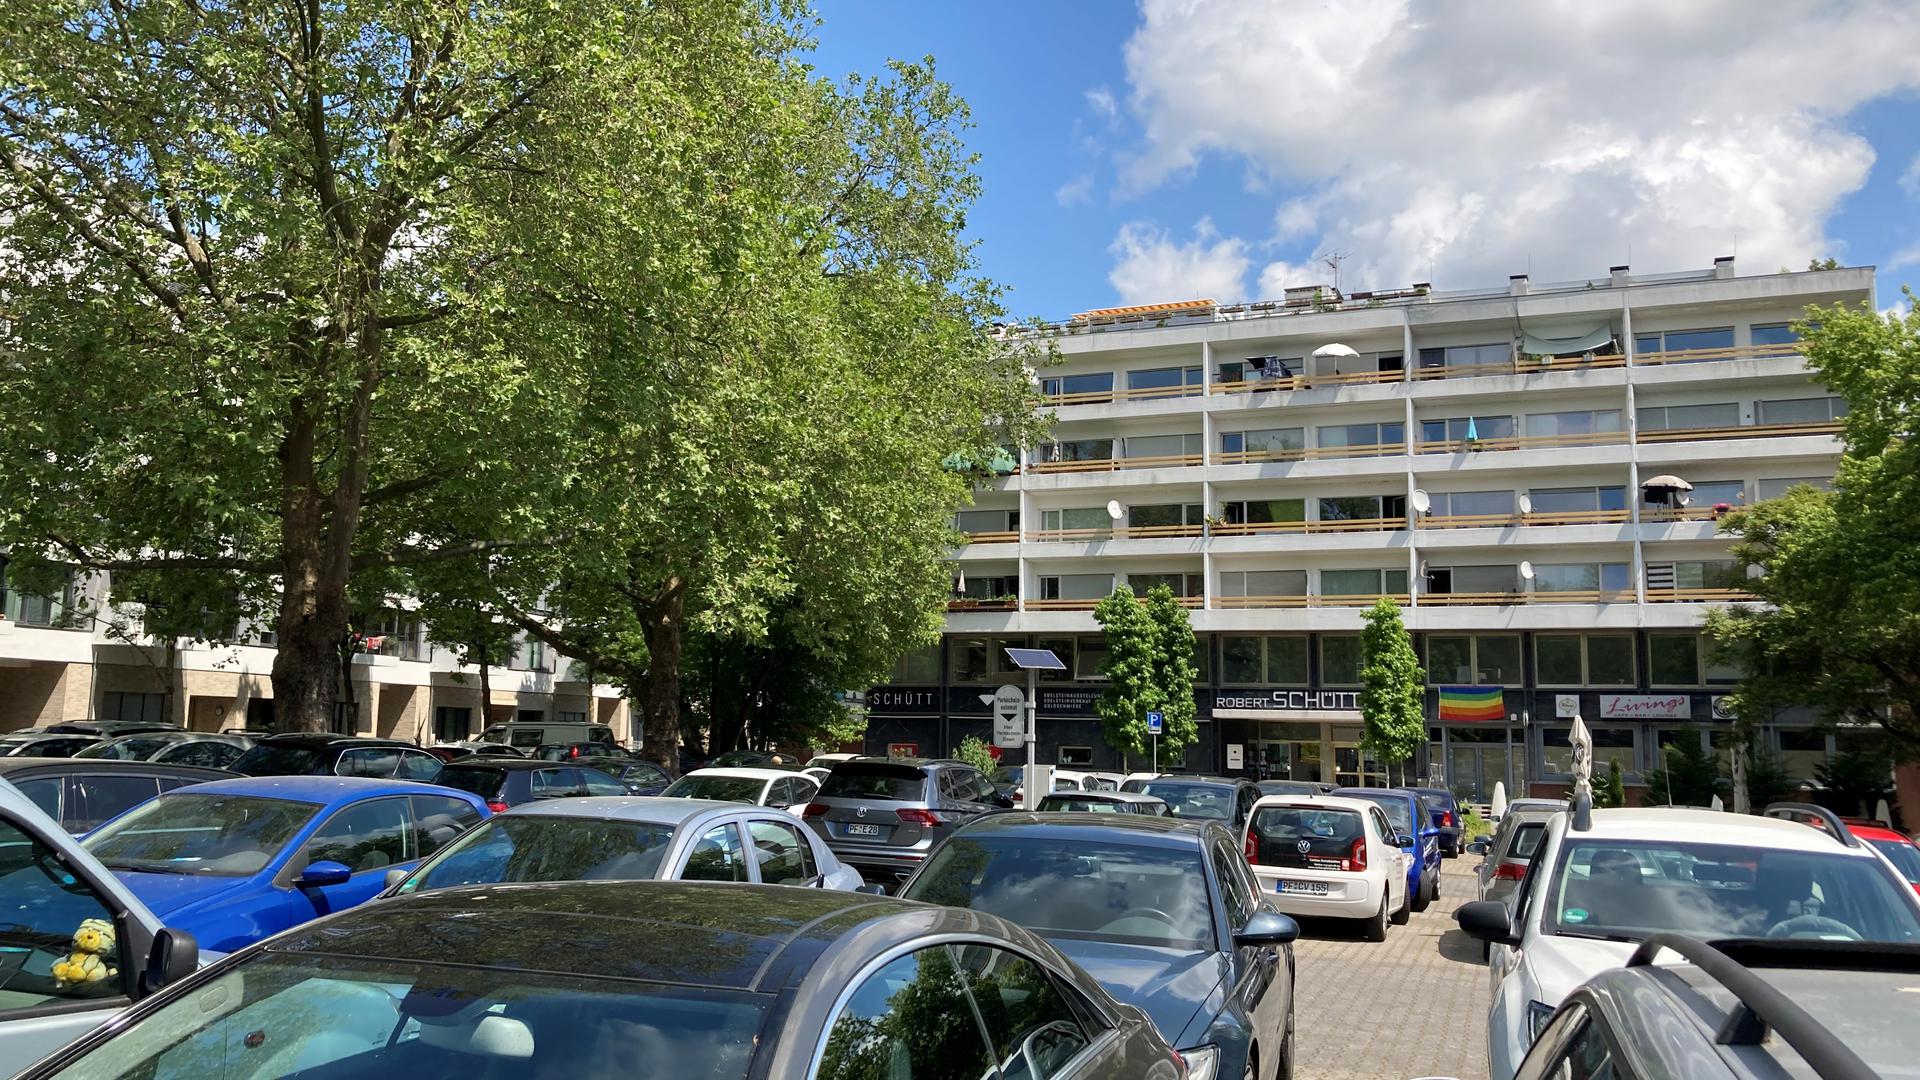 Der Goldschmiedeschulplatz ist bei Autofahrern beliebt in Pforzheim. Er soll demnächst durch ein großes Mobilitätszentrum mit weiterhin viel Platz für Autos ersetzt werden.